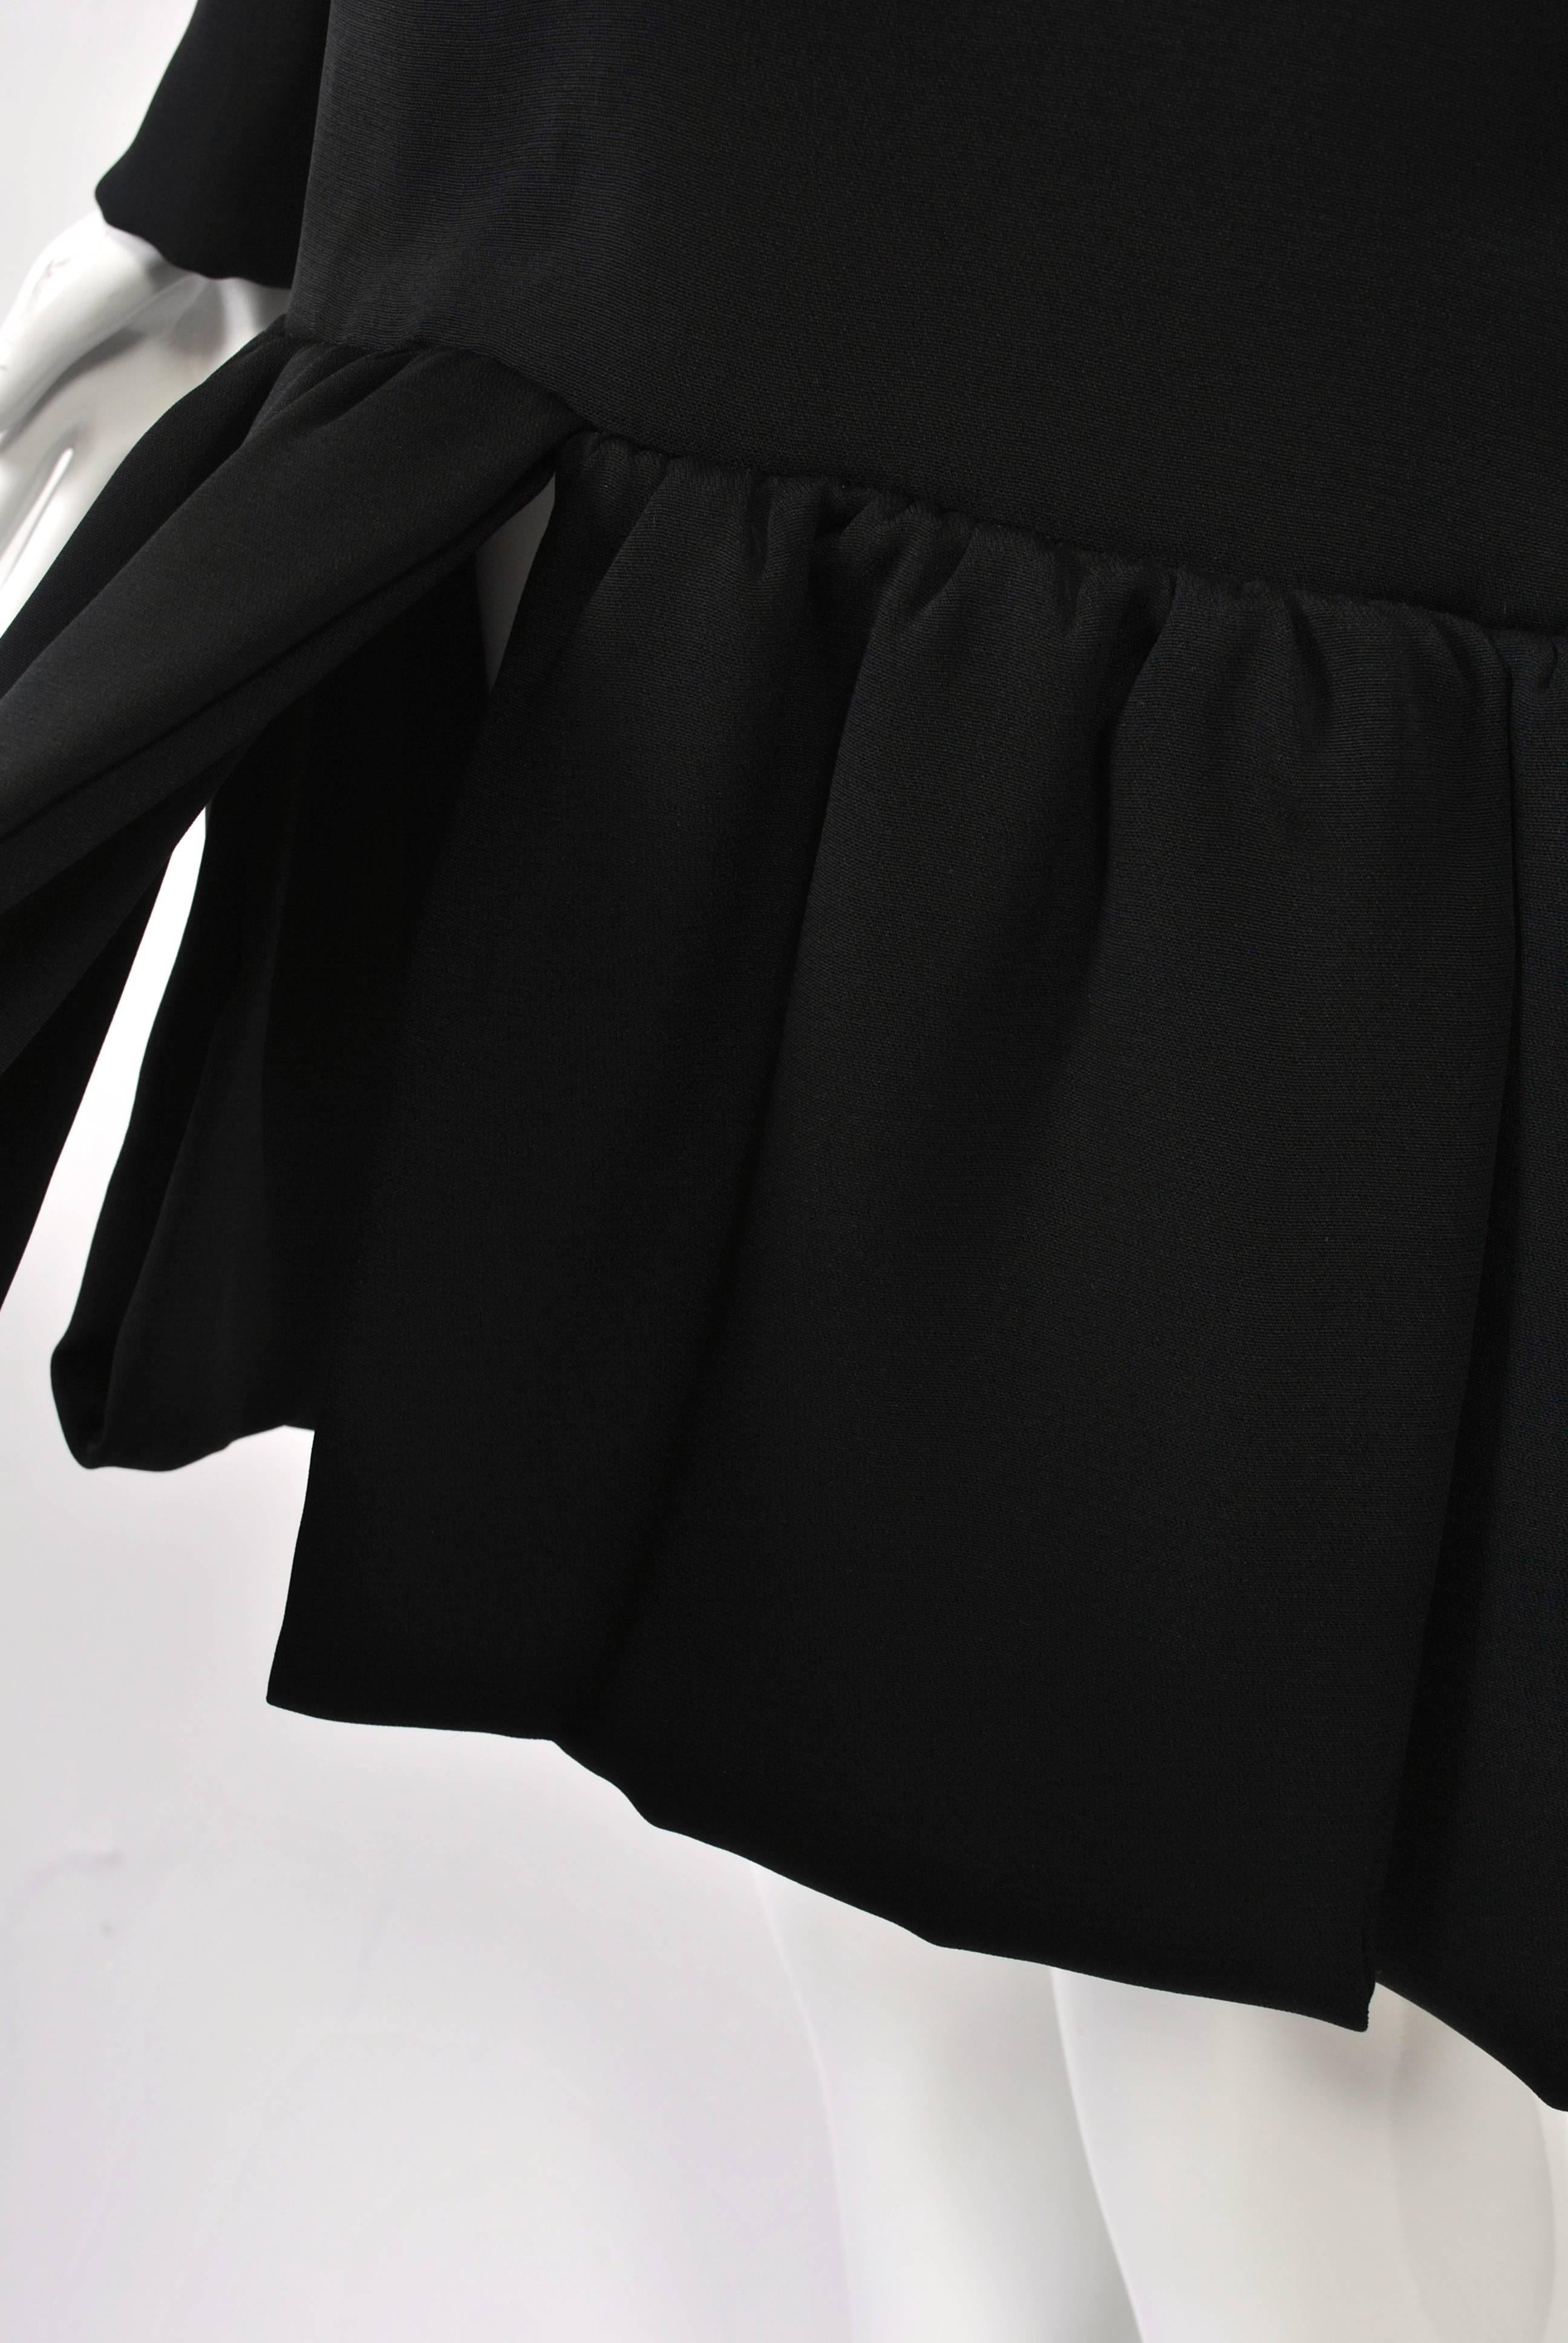 Pierre Cardin 1960s Black Dress 2